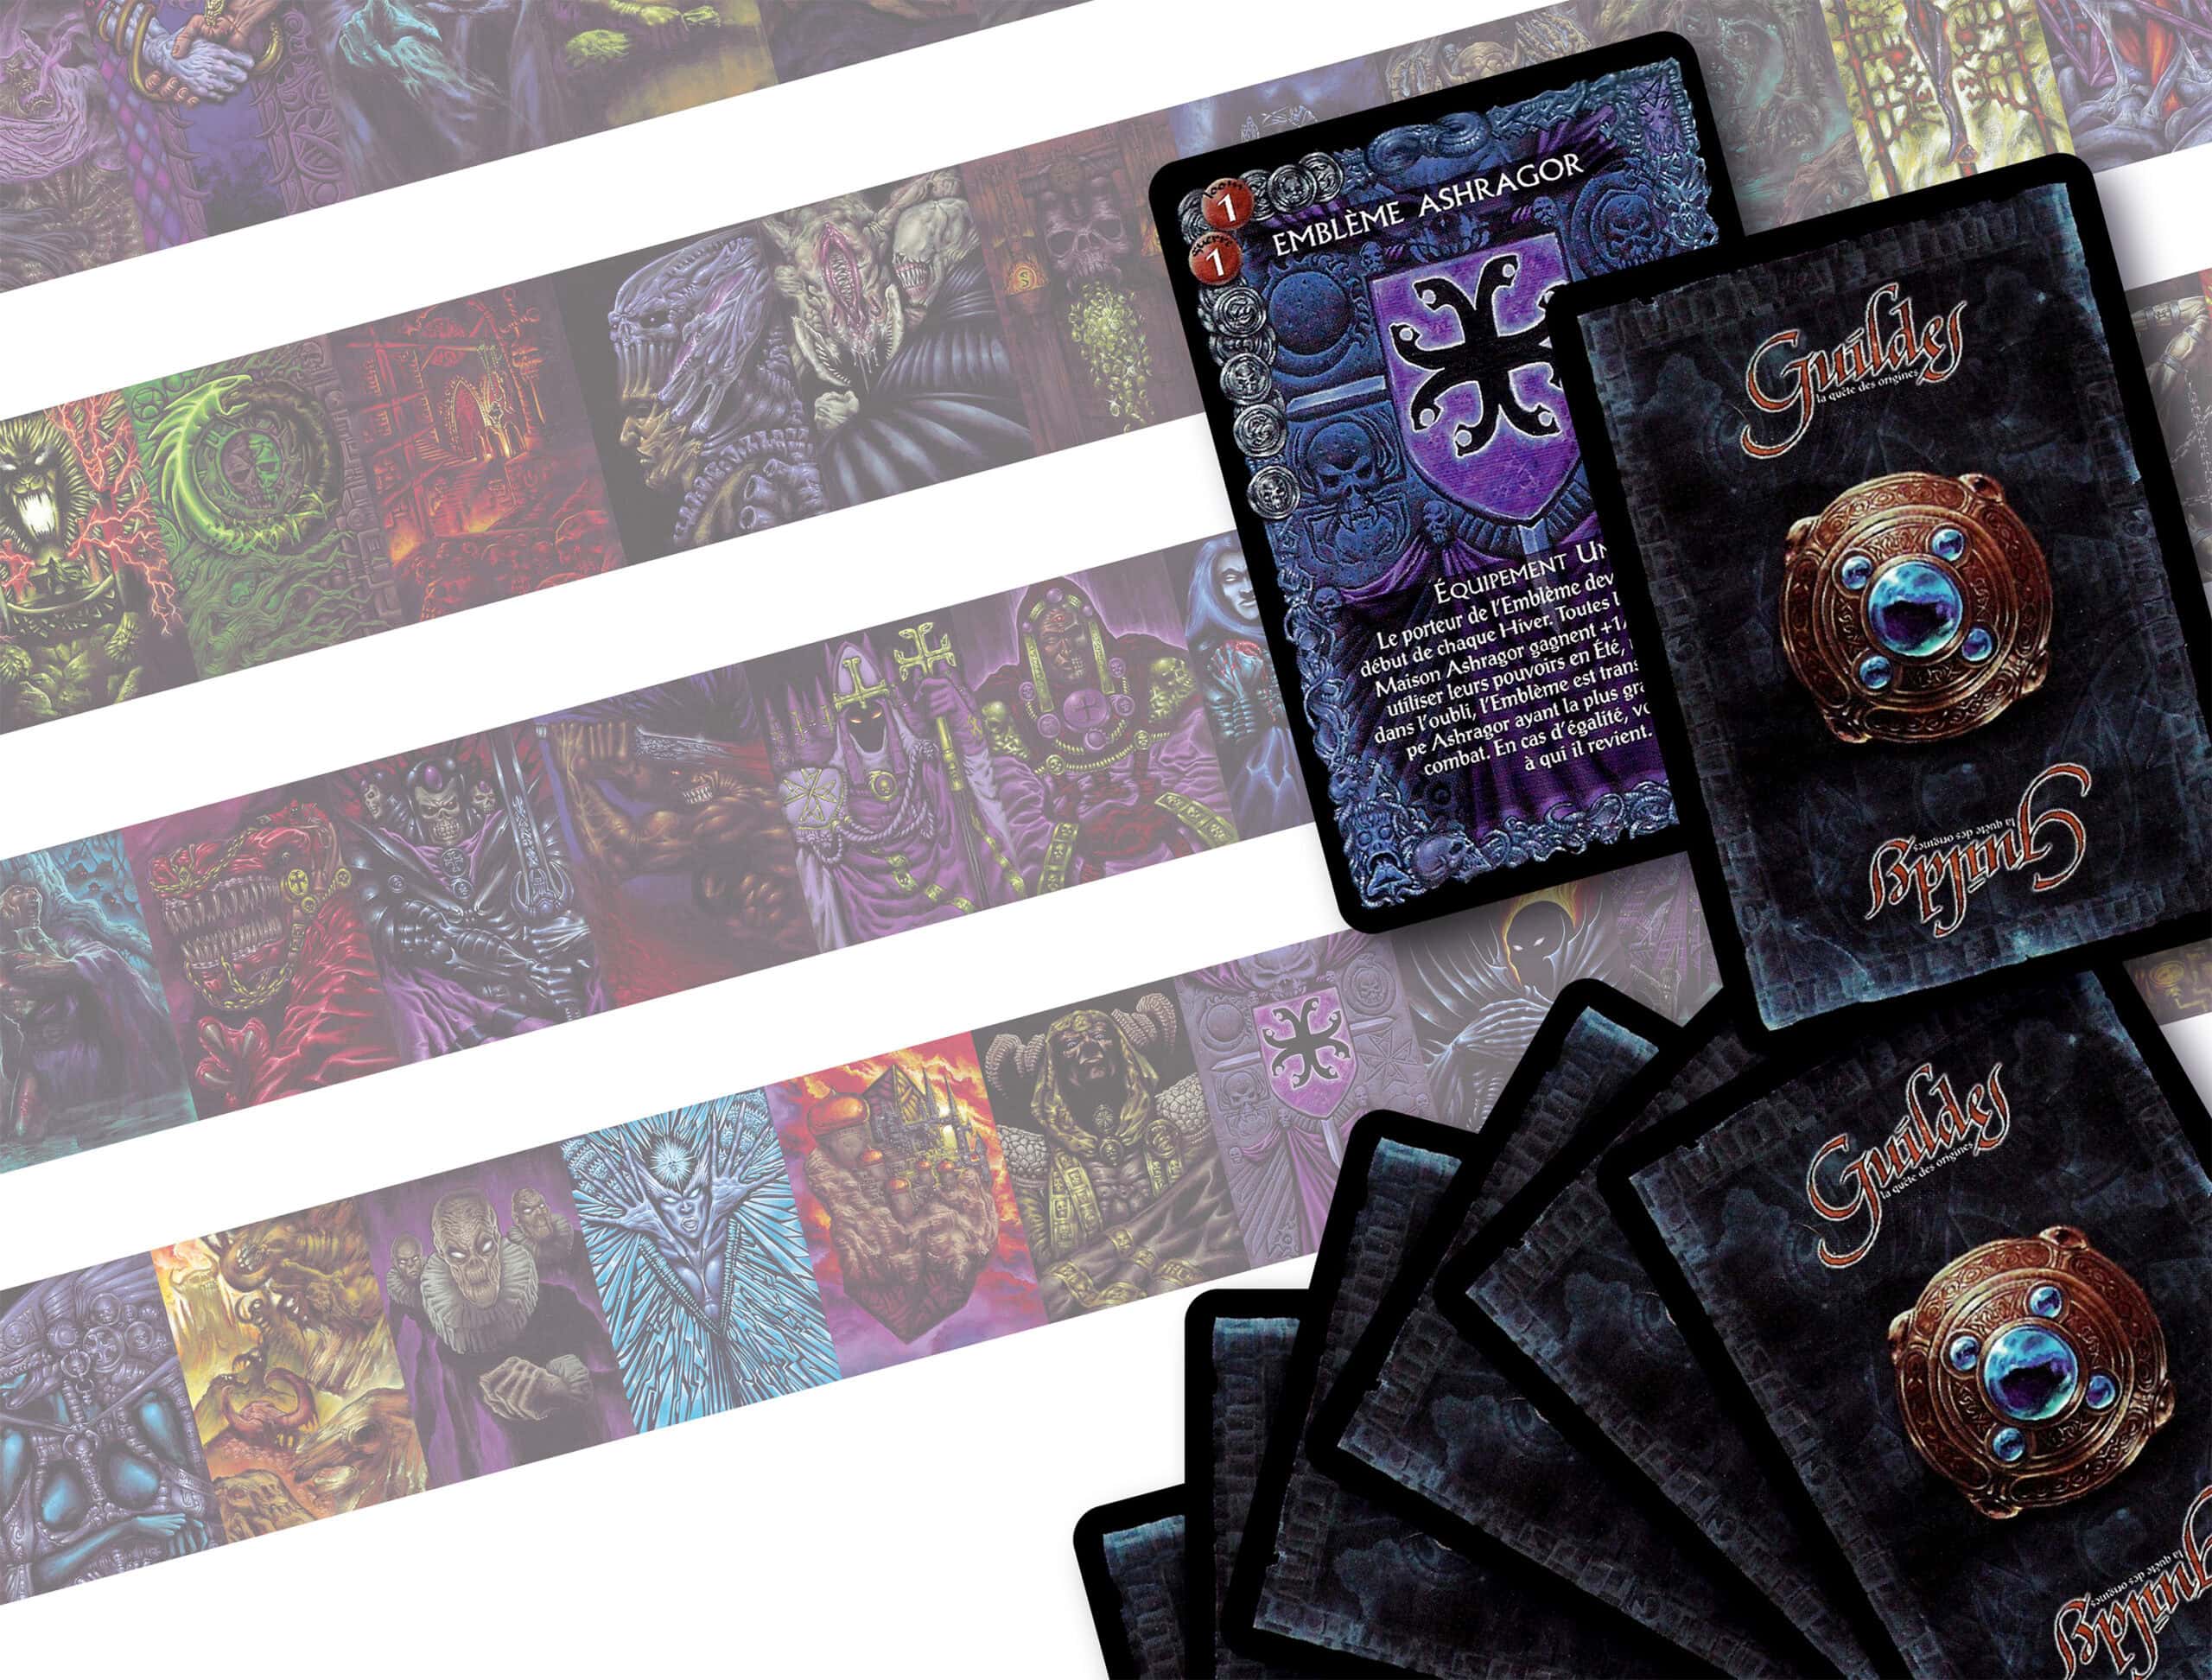 Collectible Card Game: The Ashragors